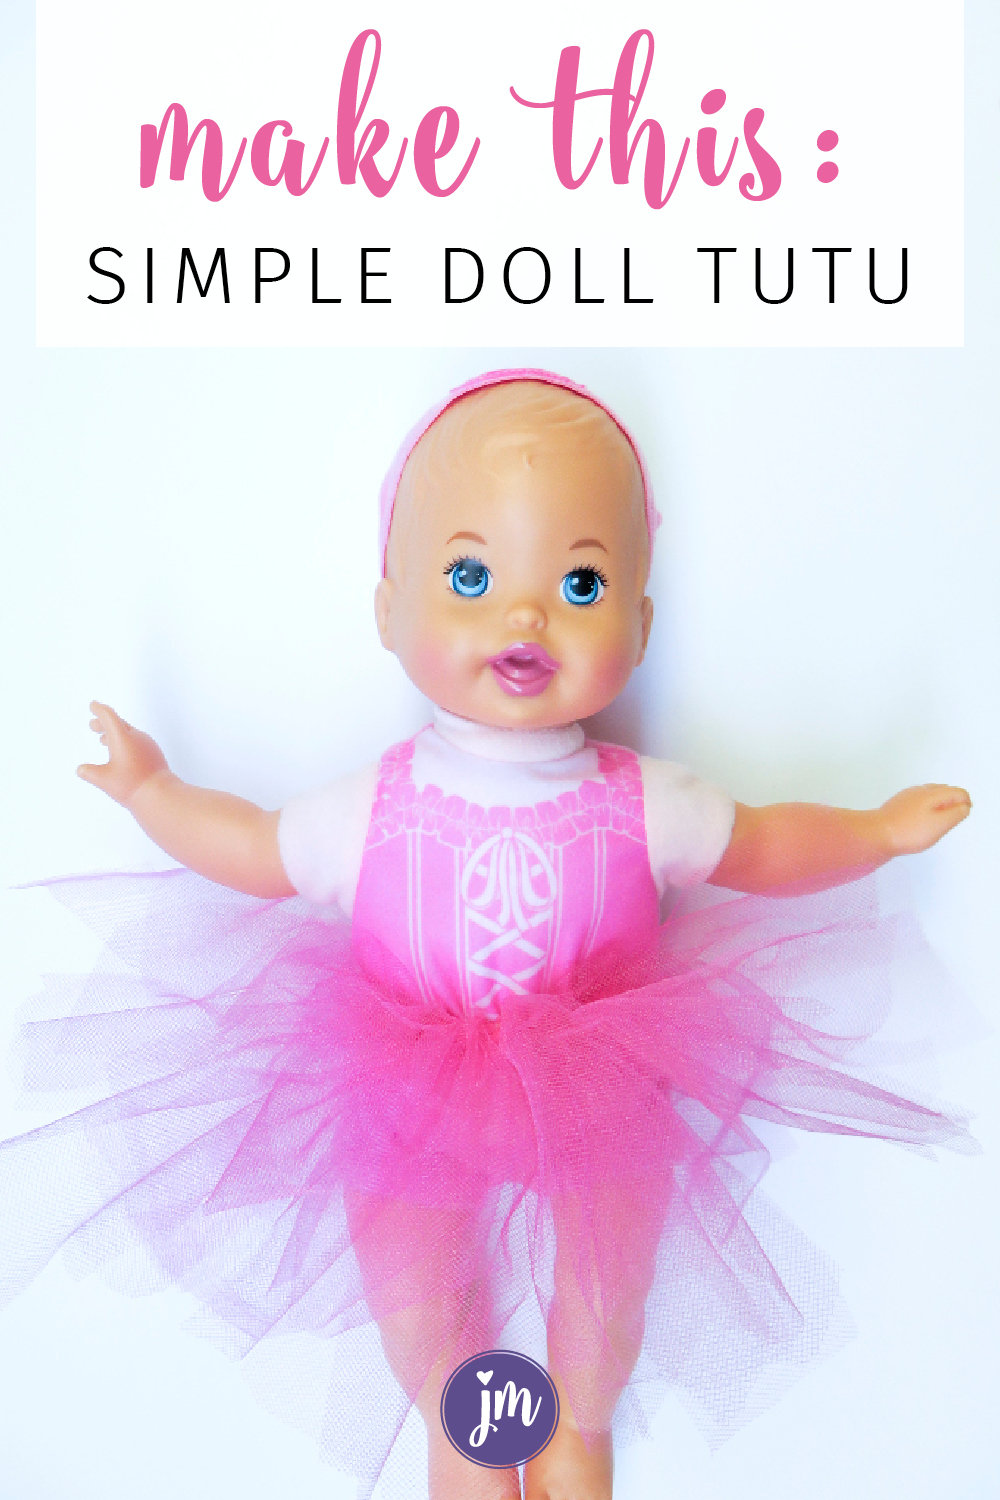 Make a Doll Tutu